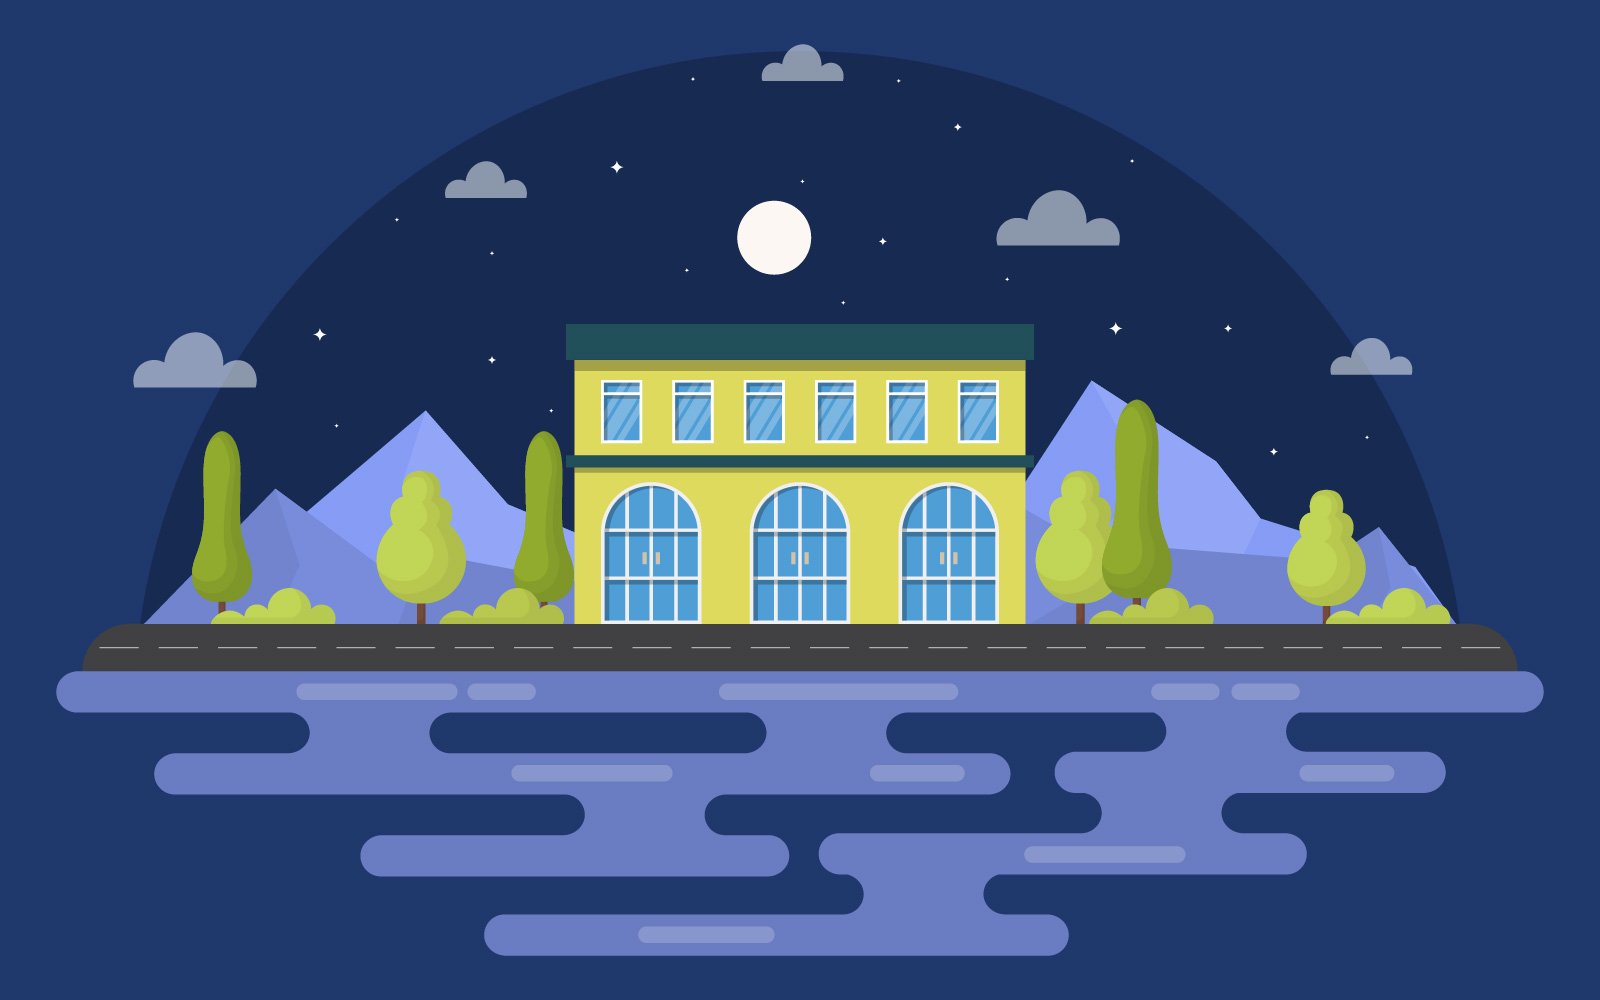 Night School Building - Illustration